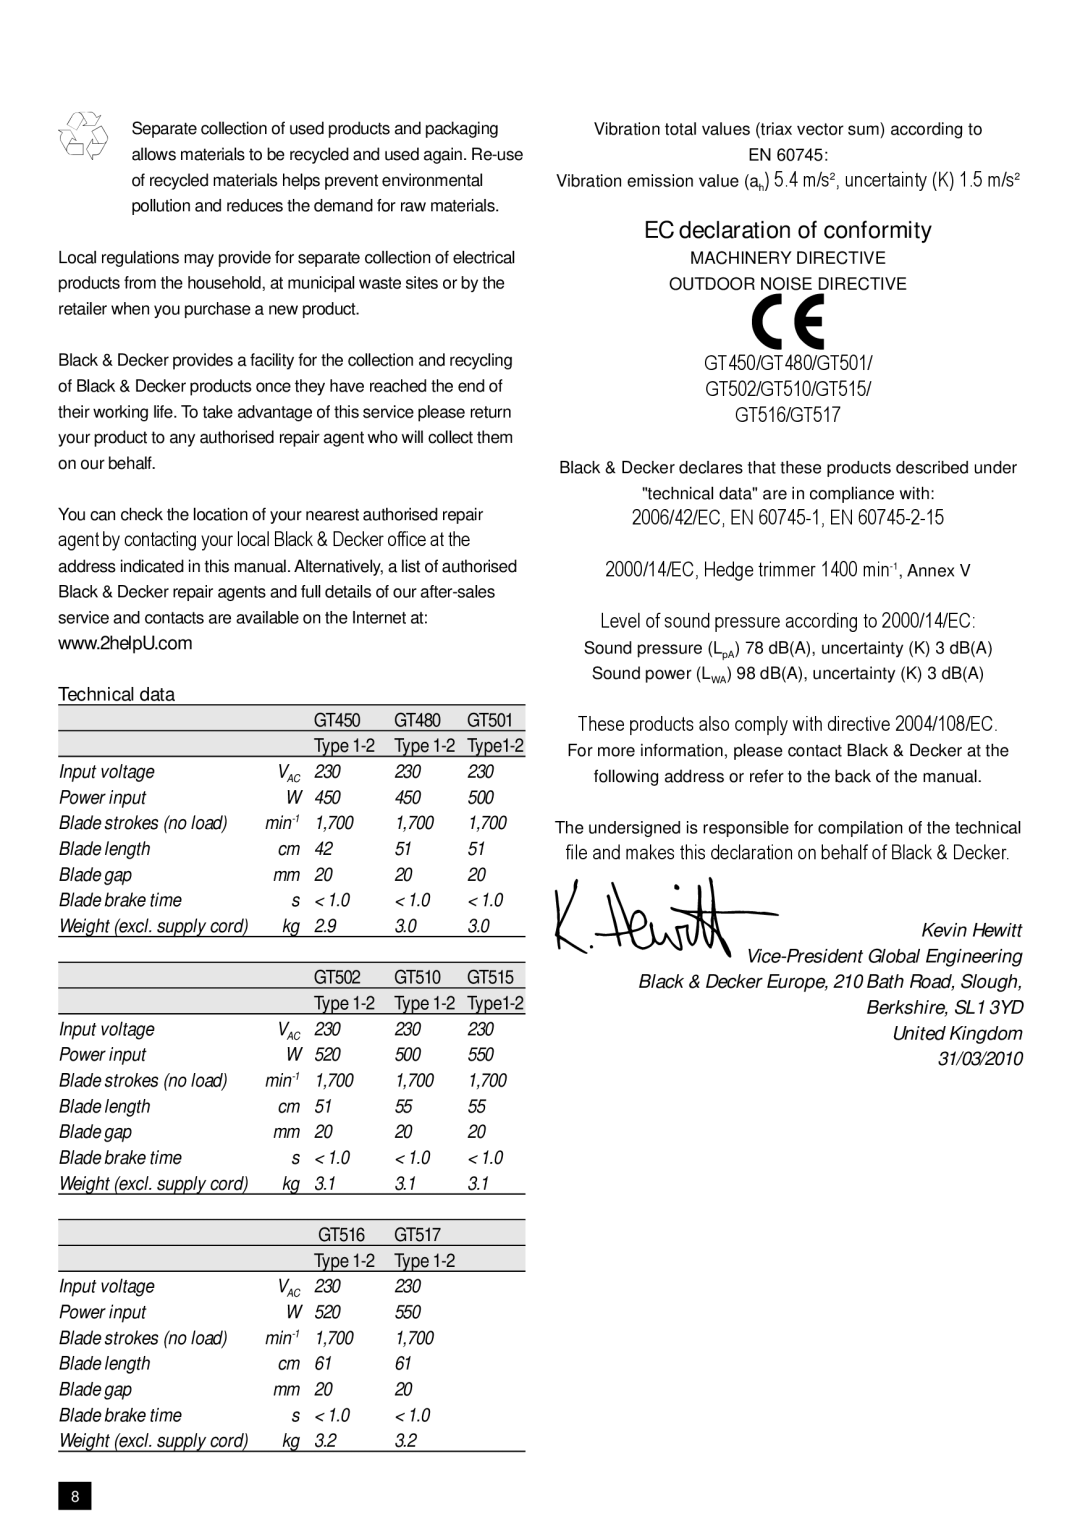 Black & Decker GT450 manual EC declaration of conformity 